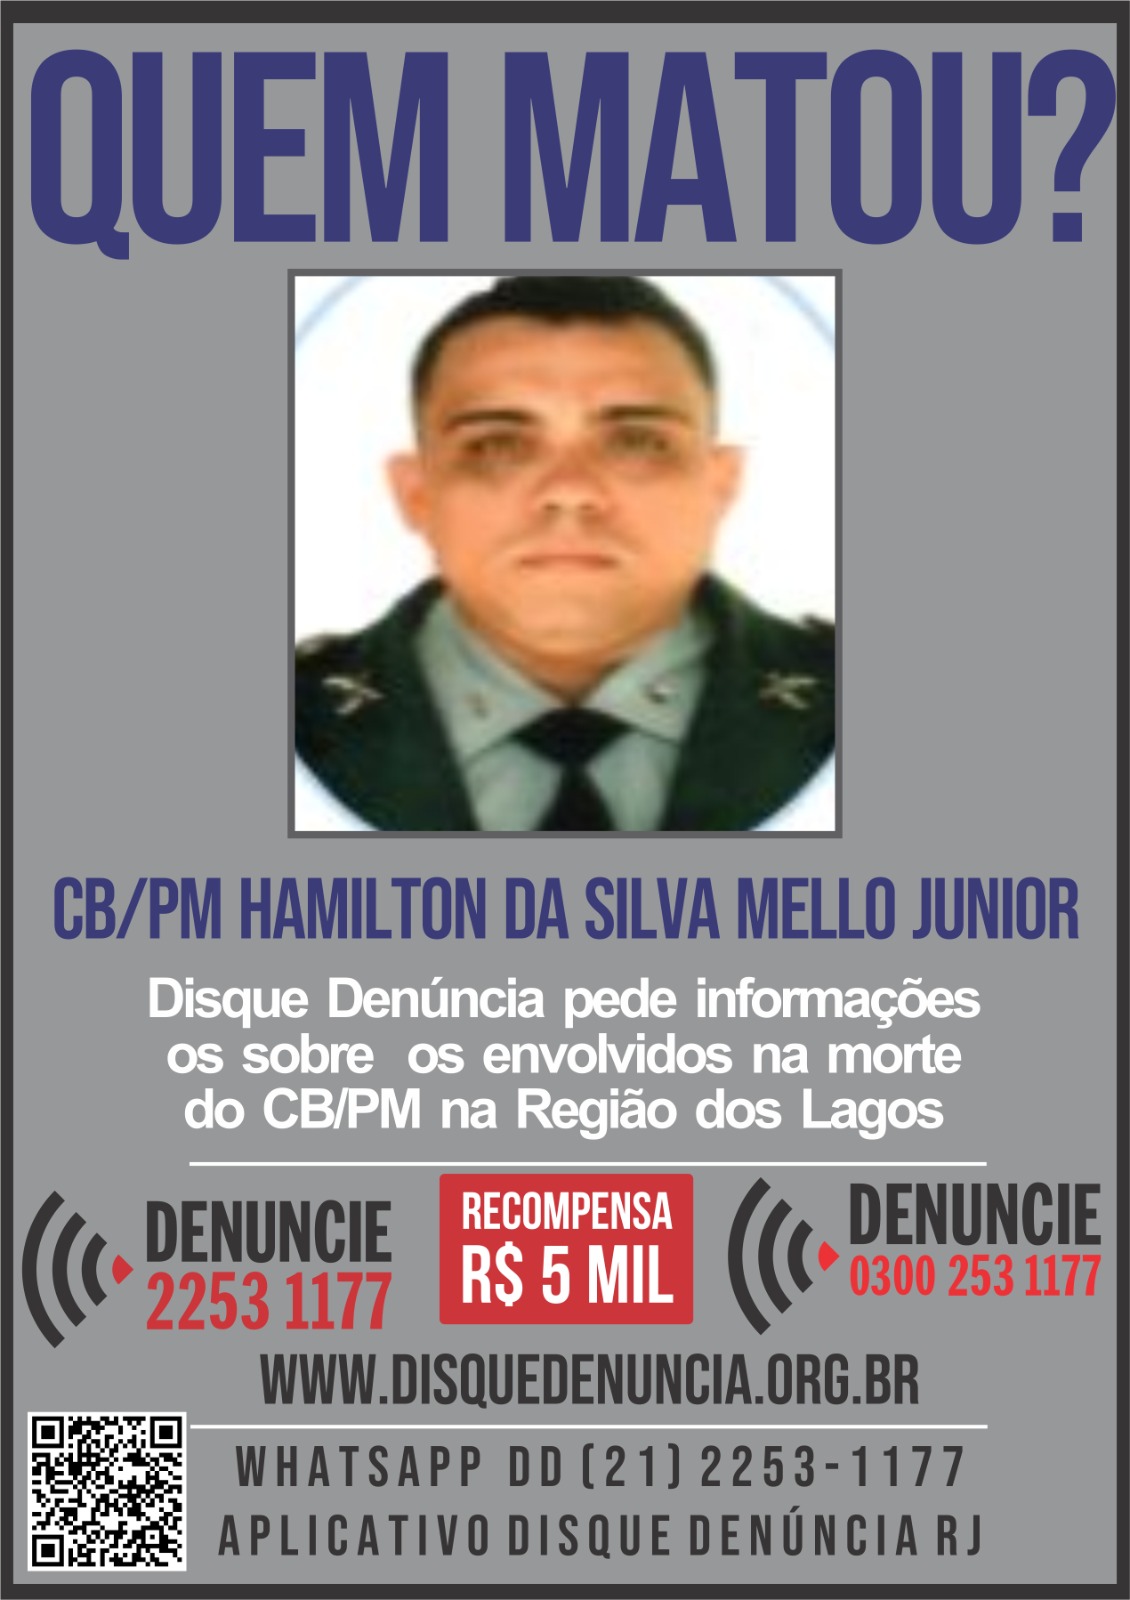 Disque Denúncia oferece recompensa por informações sobre homicídio de policial militar em Saquarema